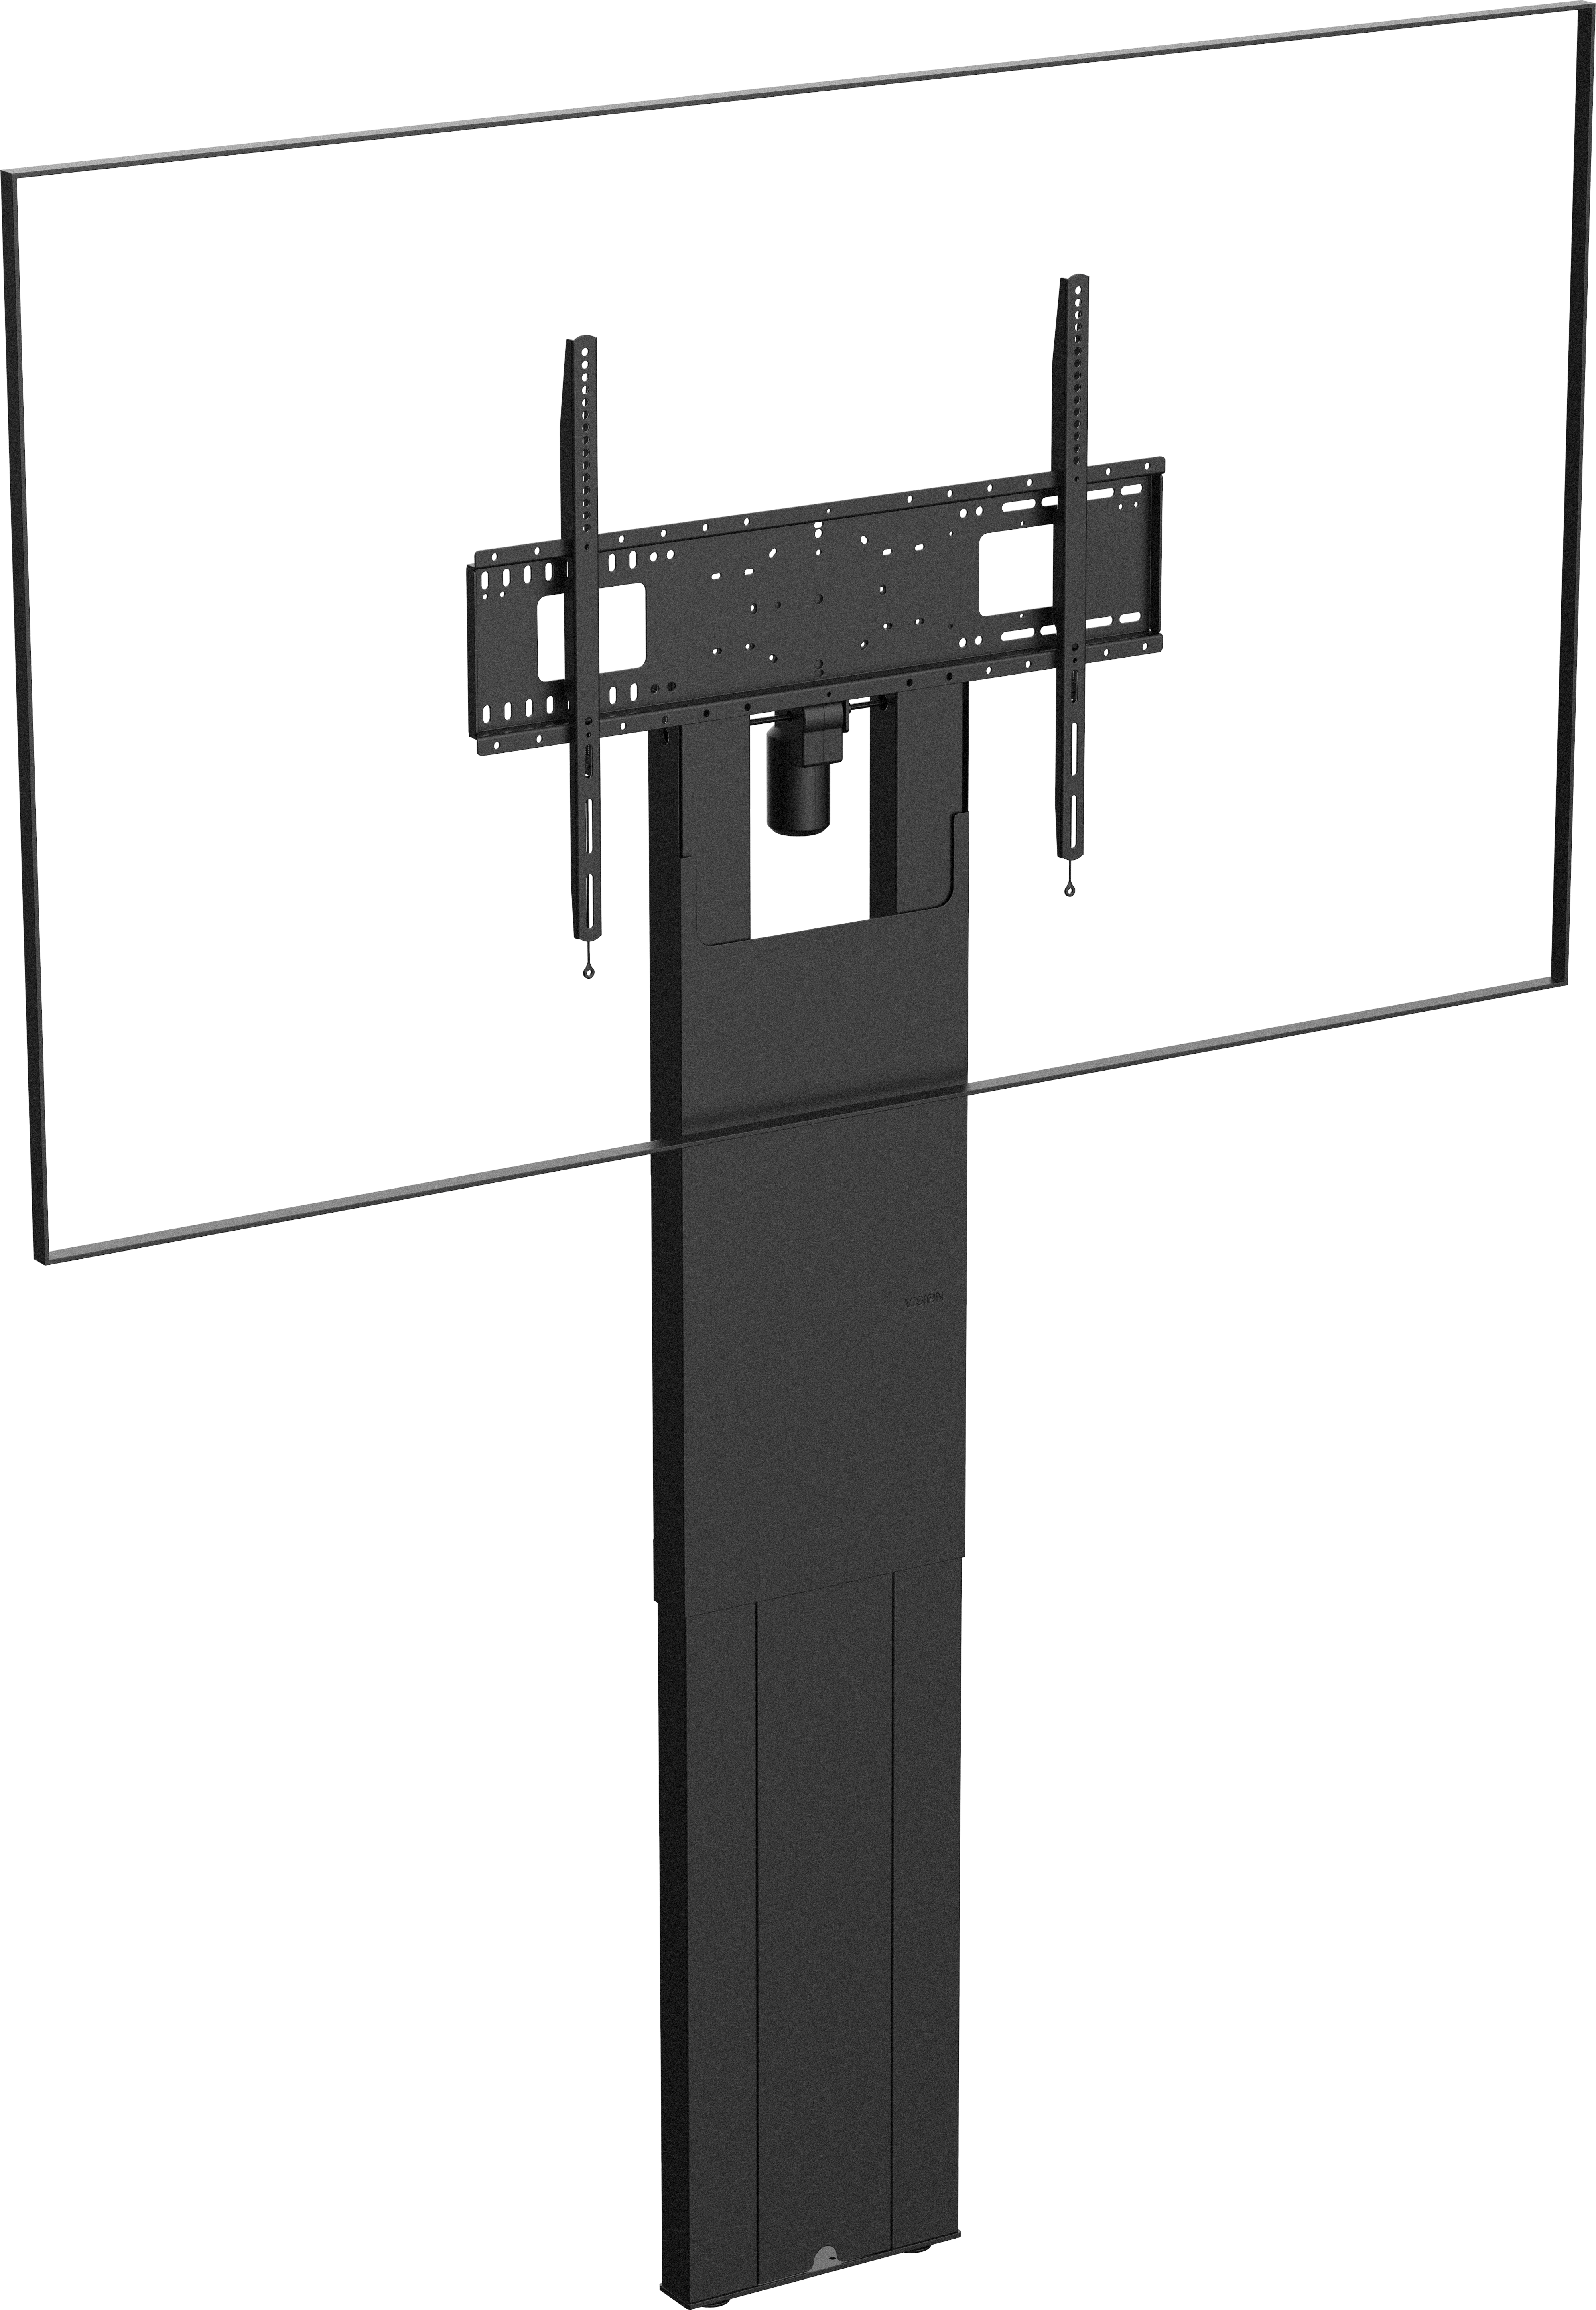 An image showing Soporte a suelo motorizado para pantallas planas